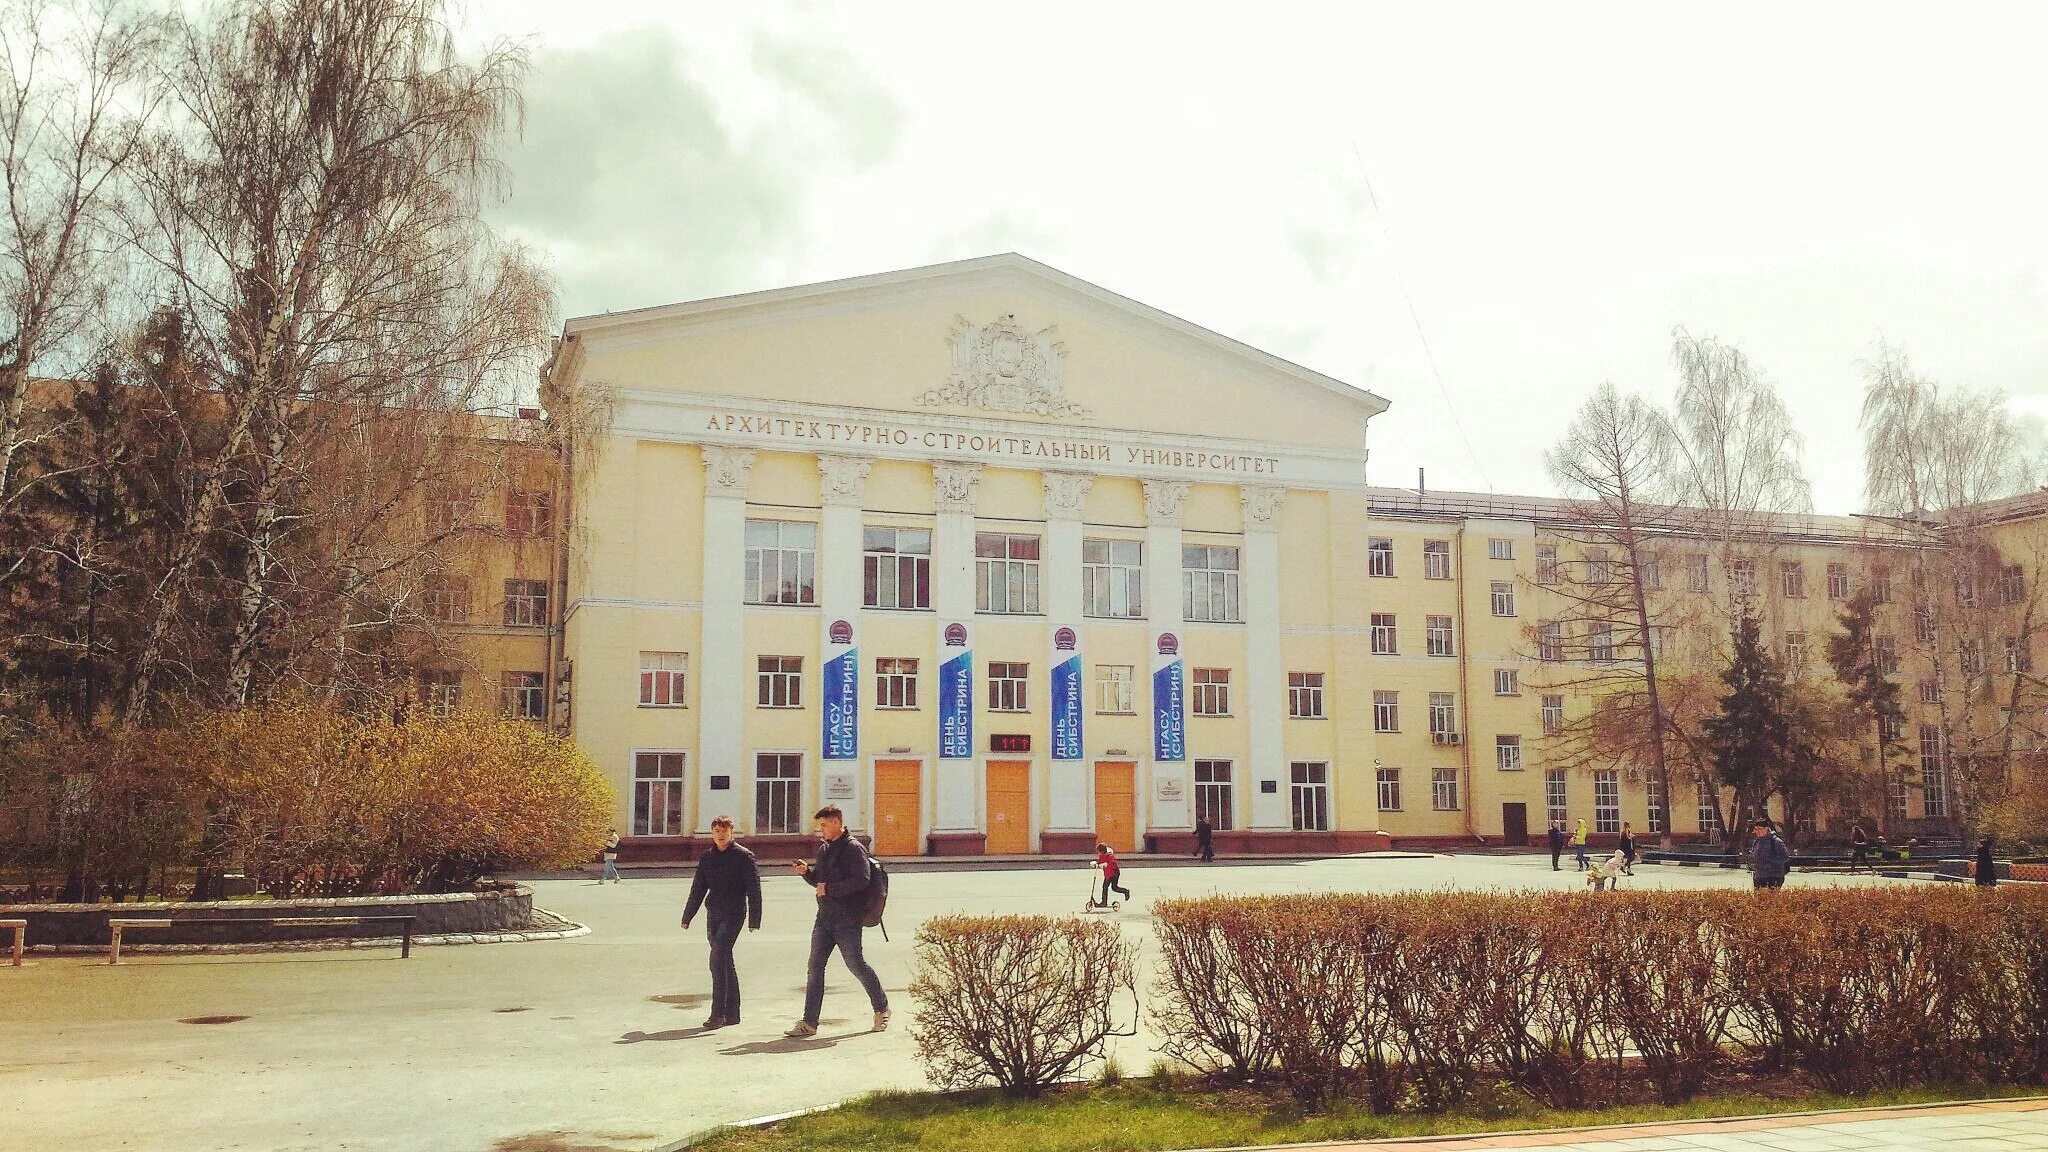 Сибстрин Новосибирск. НГАСУ Сибстрин. Архитектурно-строительный университет Новосибирск. Сибстрин здание. Сайт строительного университета нижний